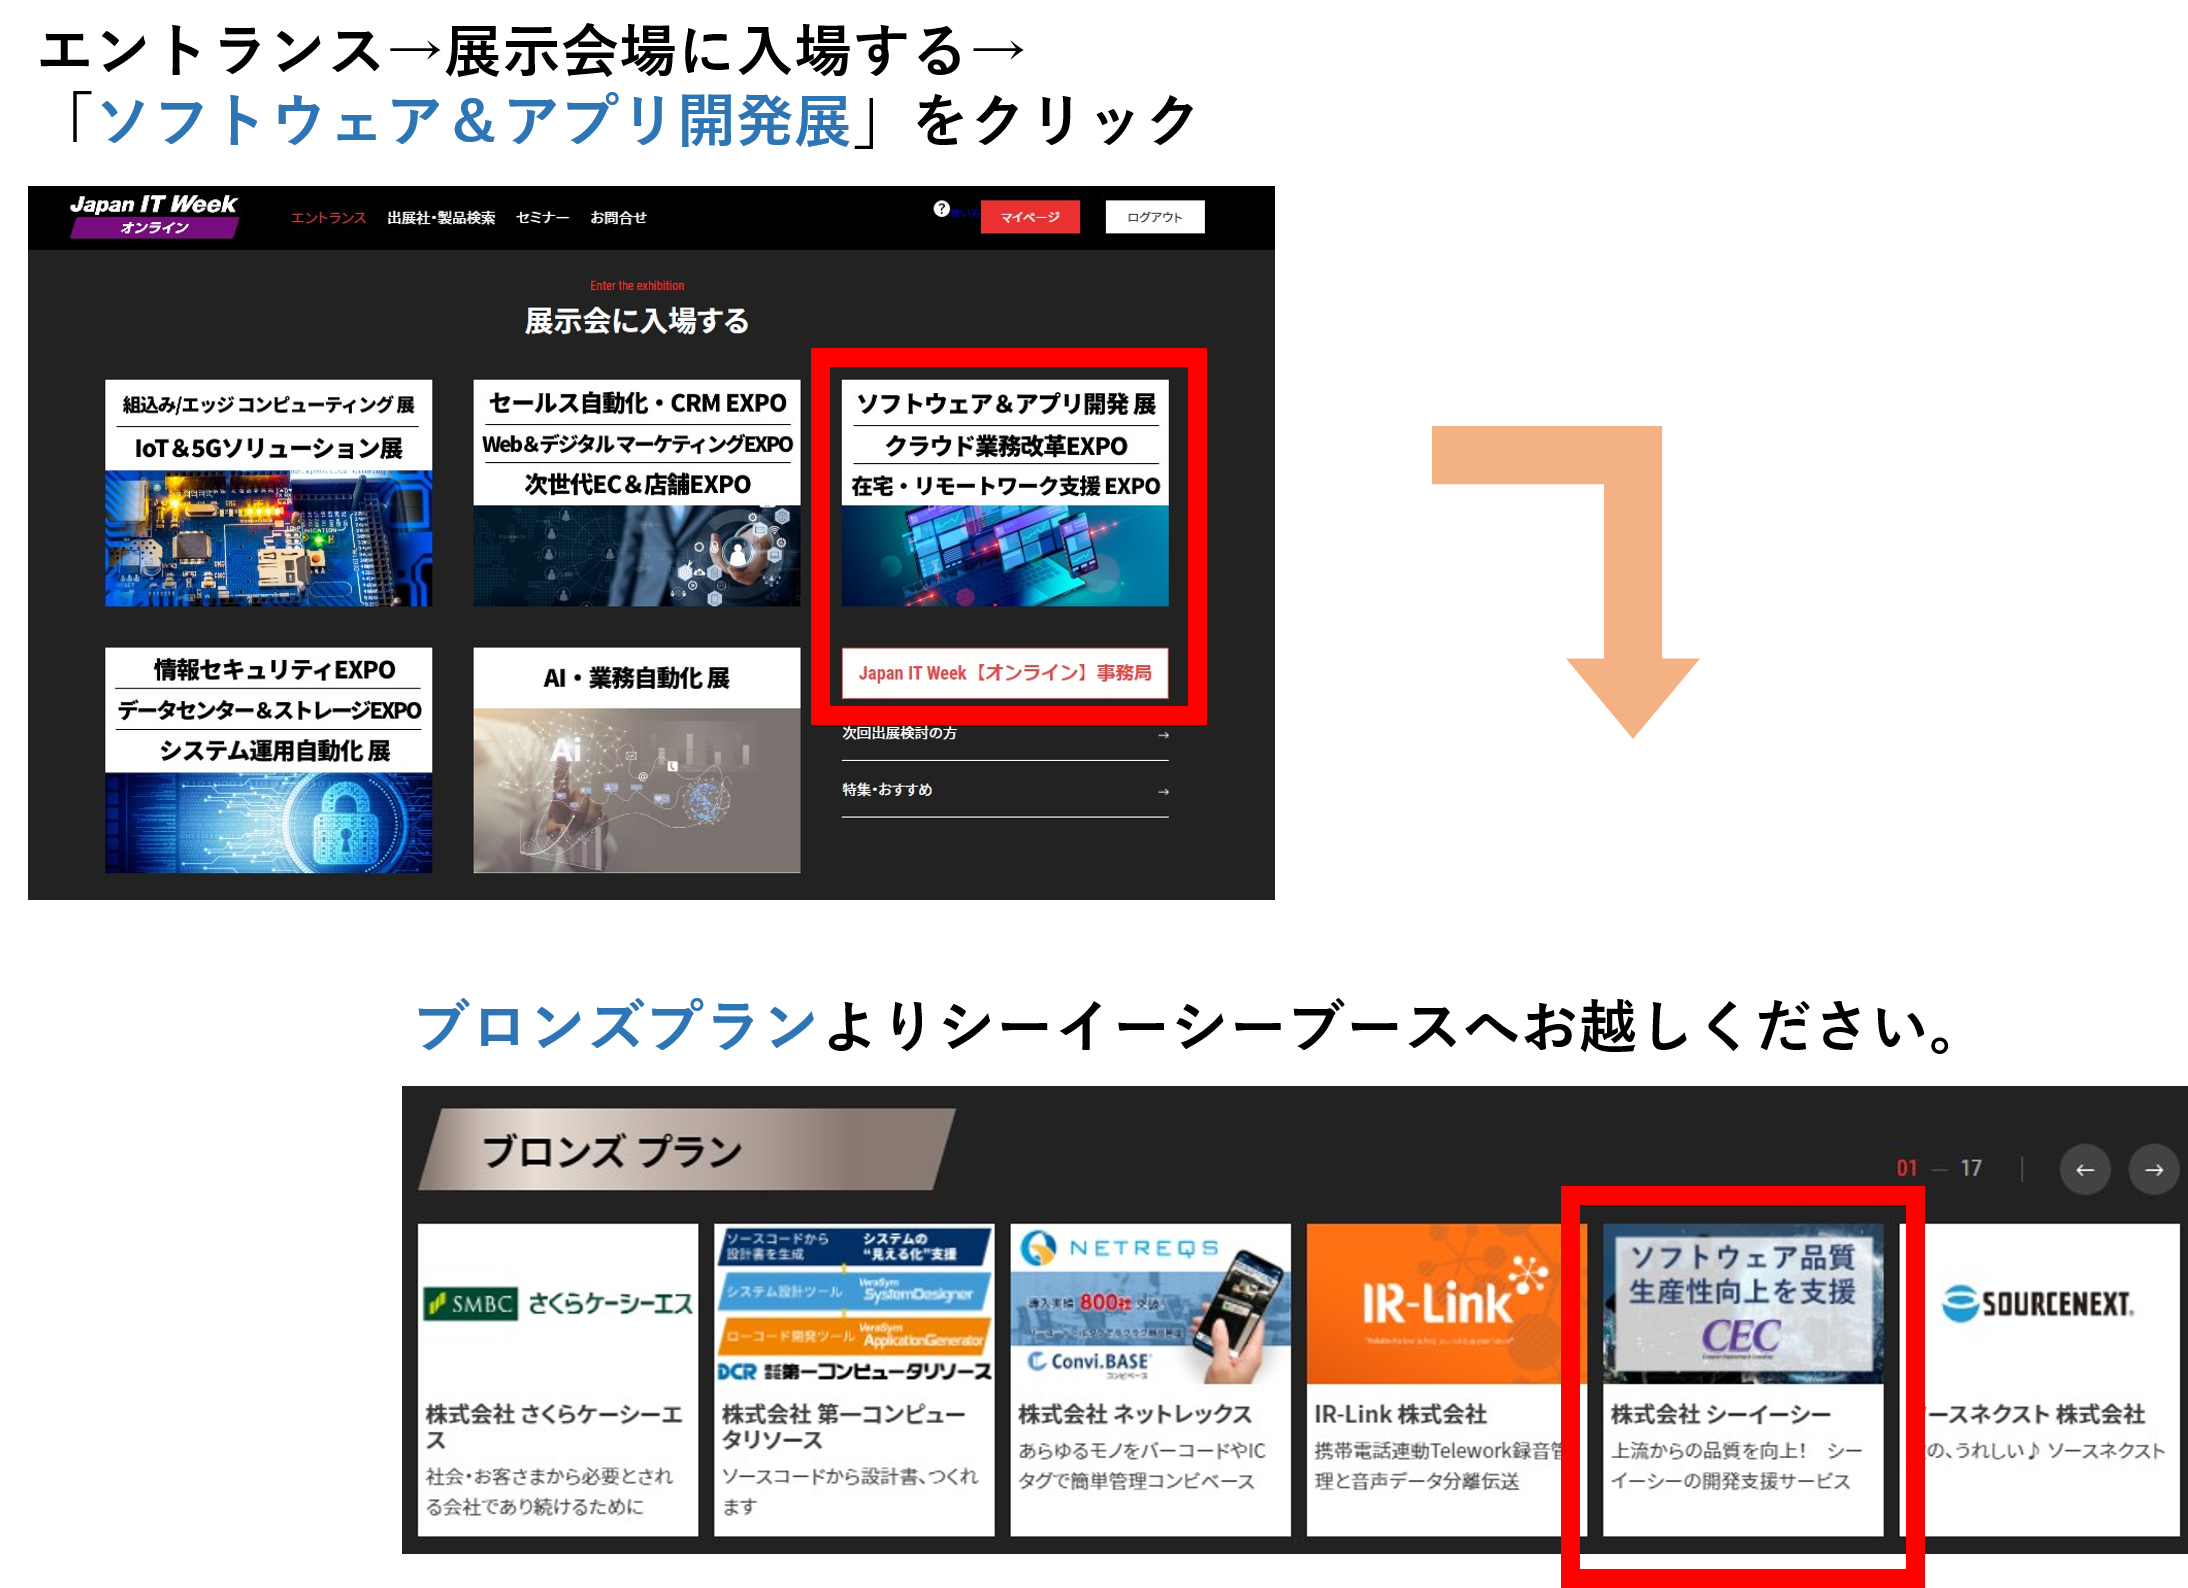 イベント情報 第1回 Japan It Week オンライン 出展のご案内 ソフトウェア開発 検証 シーイーシー